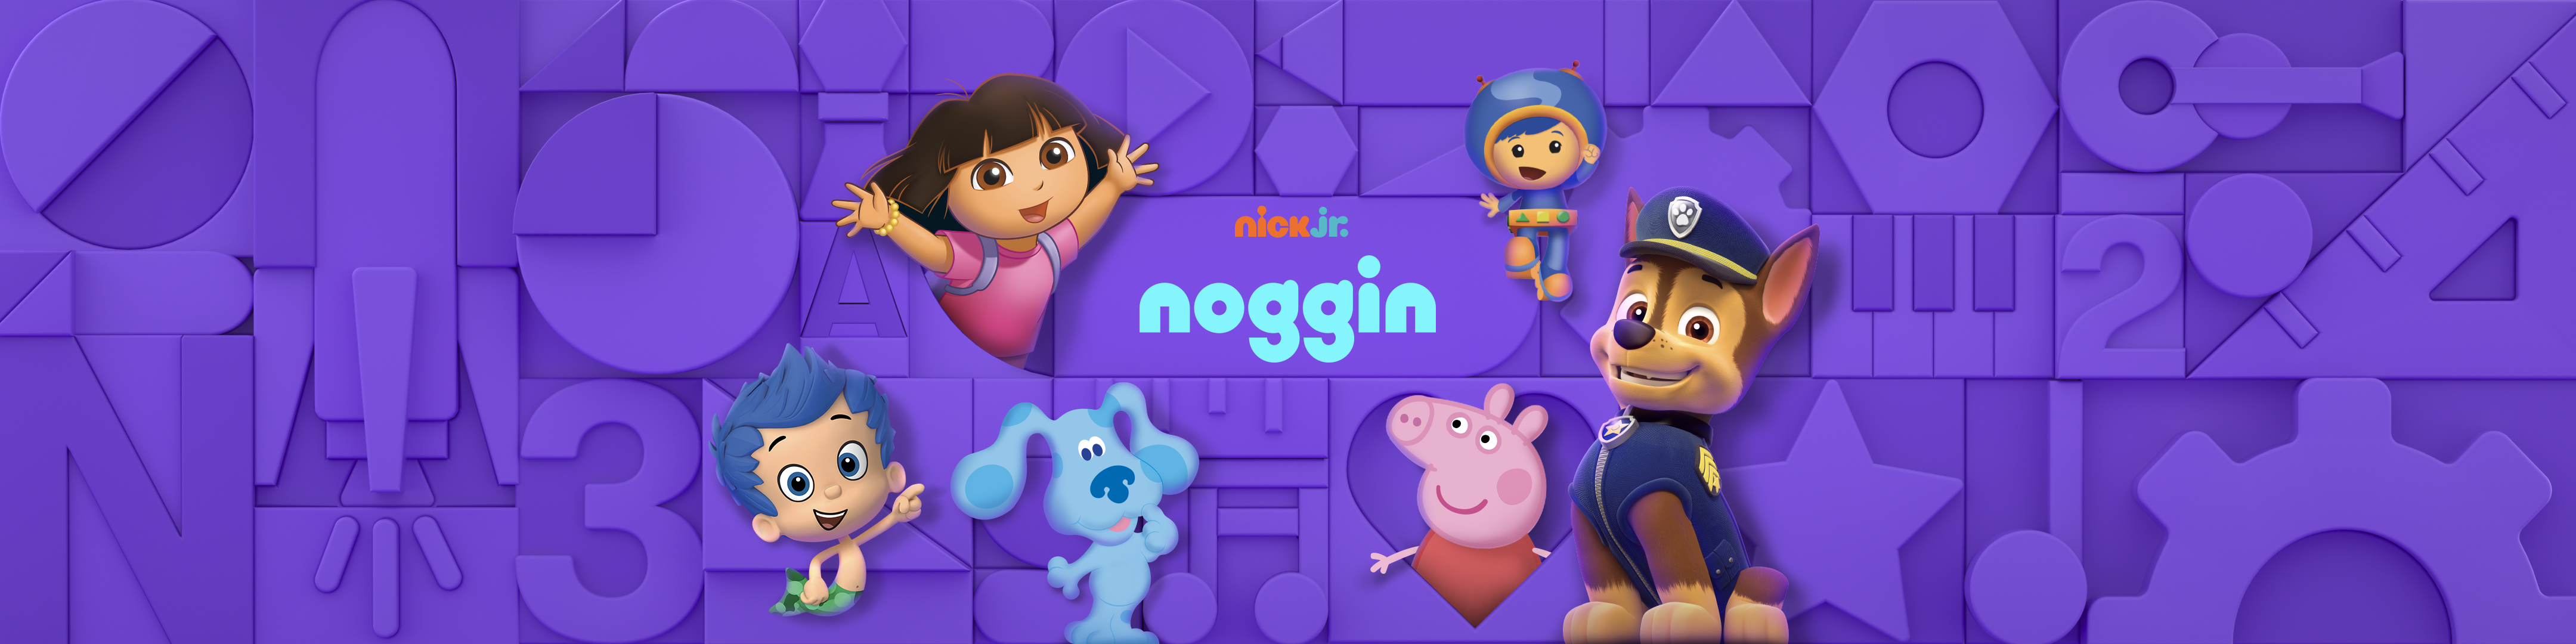 Free Noggin App For Kids